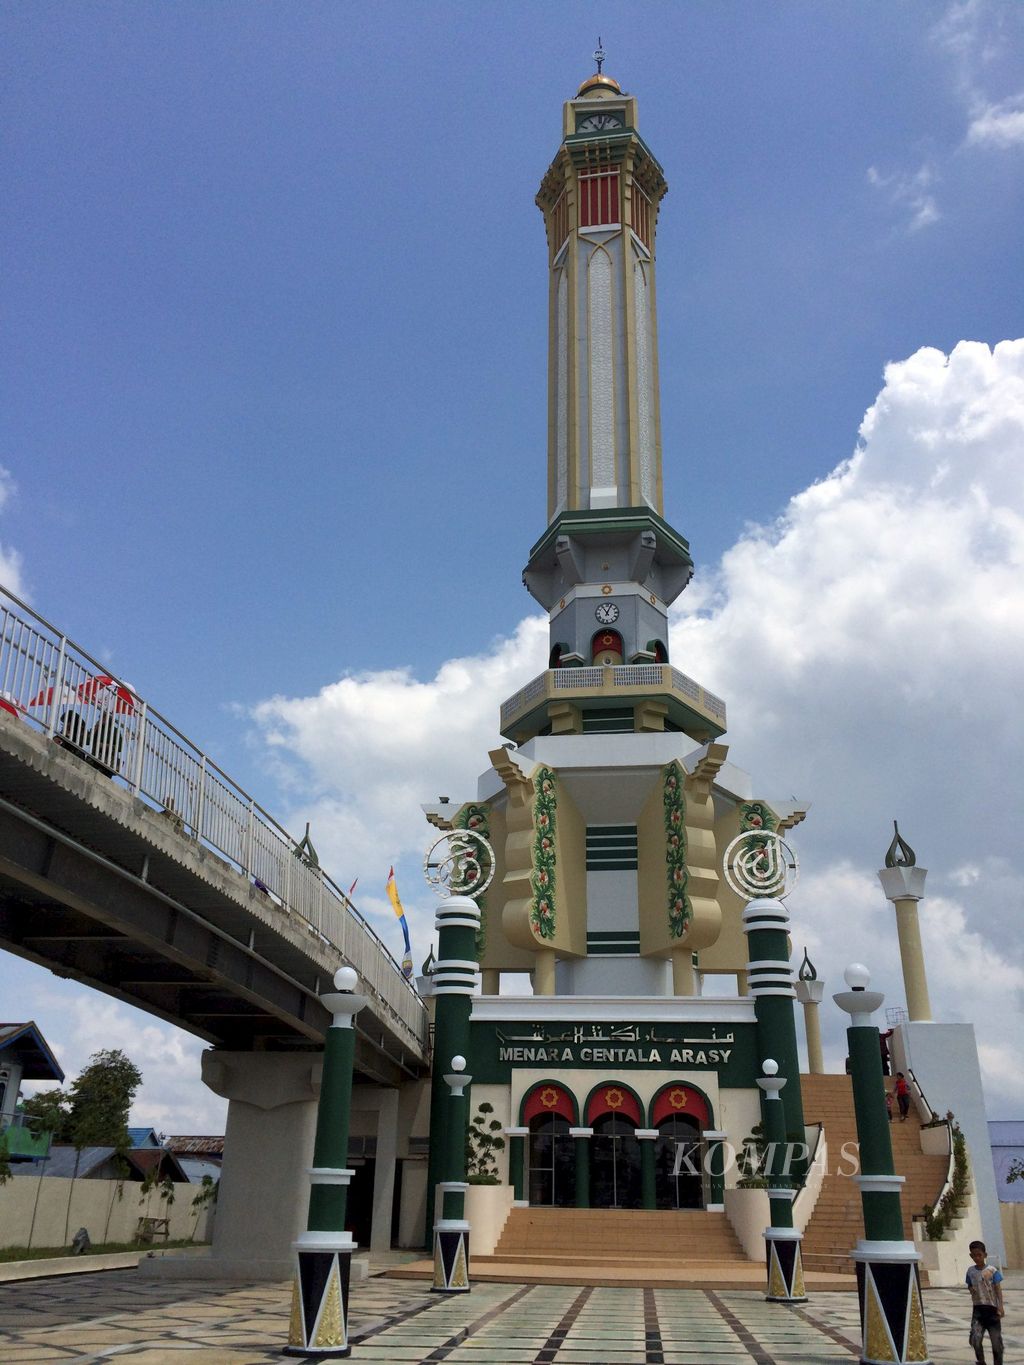 Menara Gentala Arasy menjadi bagian tak terpisahkan dari Kota Jambi di masa kini. Bangunan yang diresmikan Wakil Presiden Jusuf Kalla pada Maret 2015 diharapkan menjadi penanda kota dan ikon pariwisata karena letaknya yang berada di tepi Sungai Batanghari.